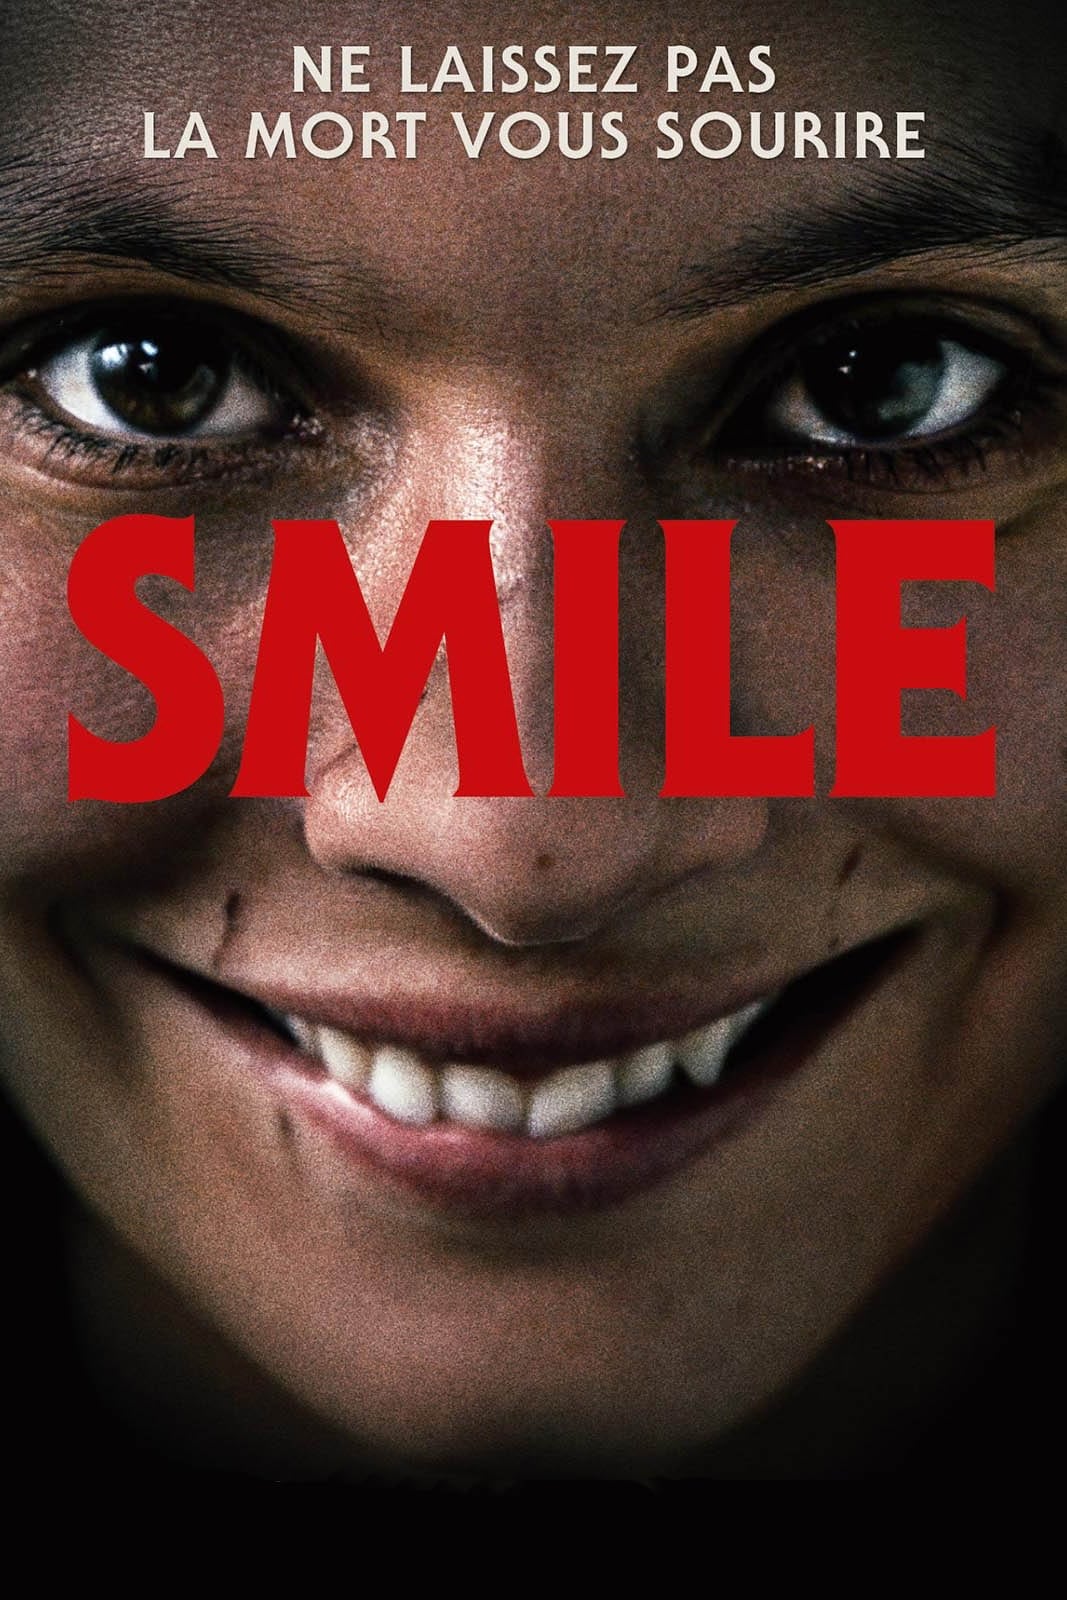 Affiche du film Smile